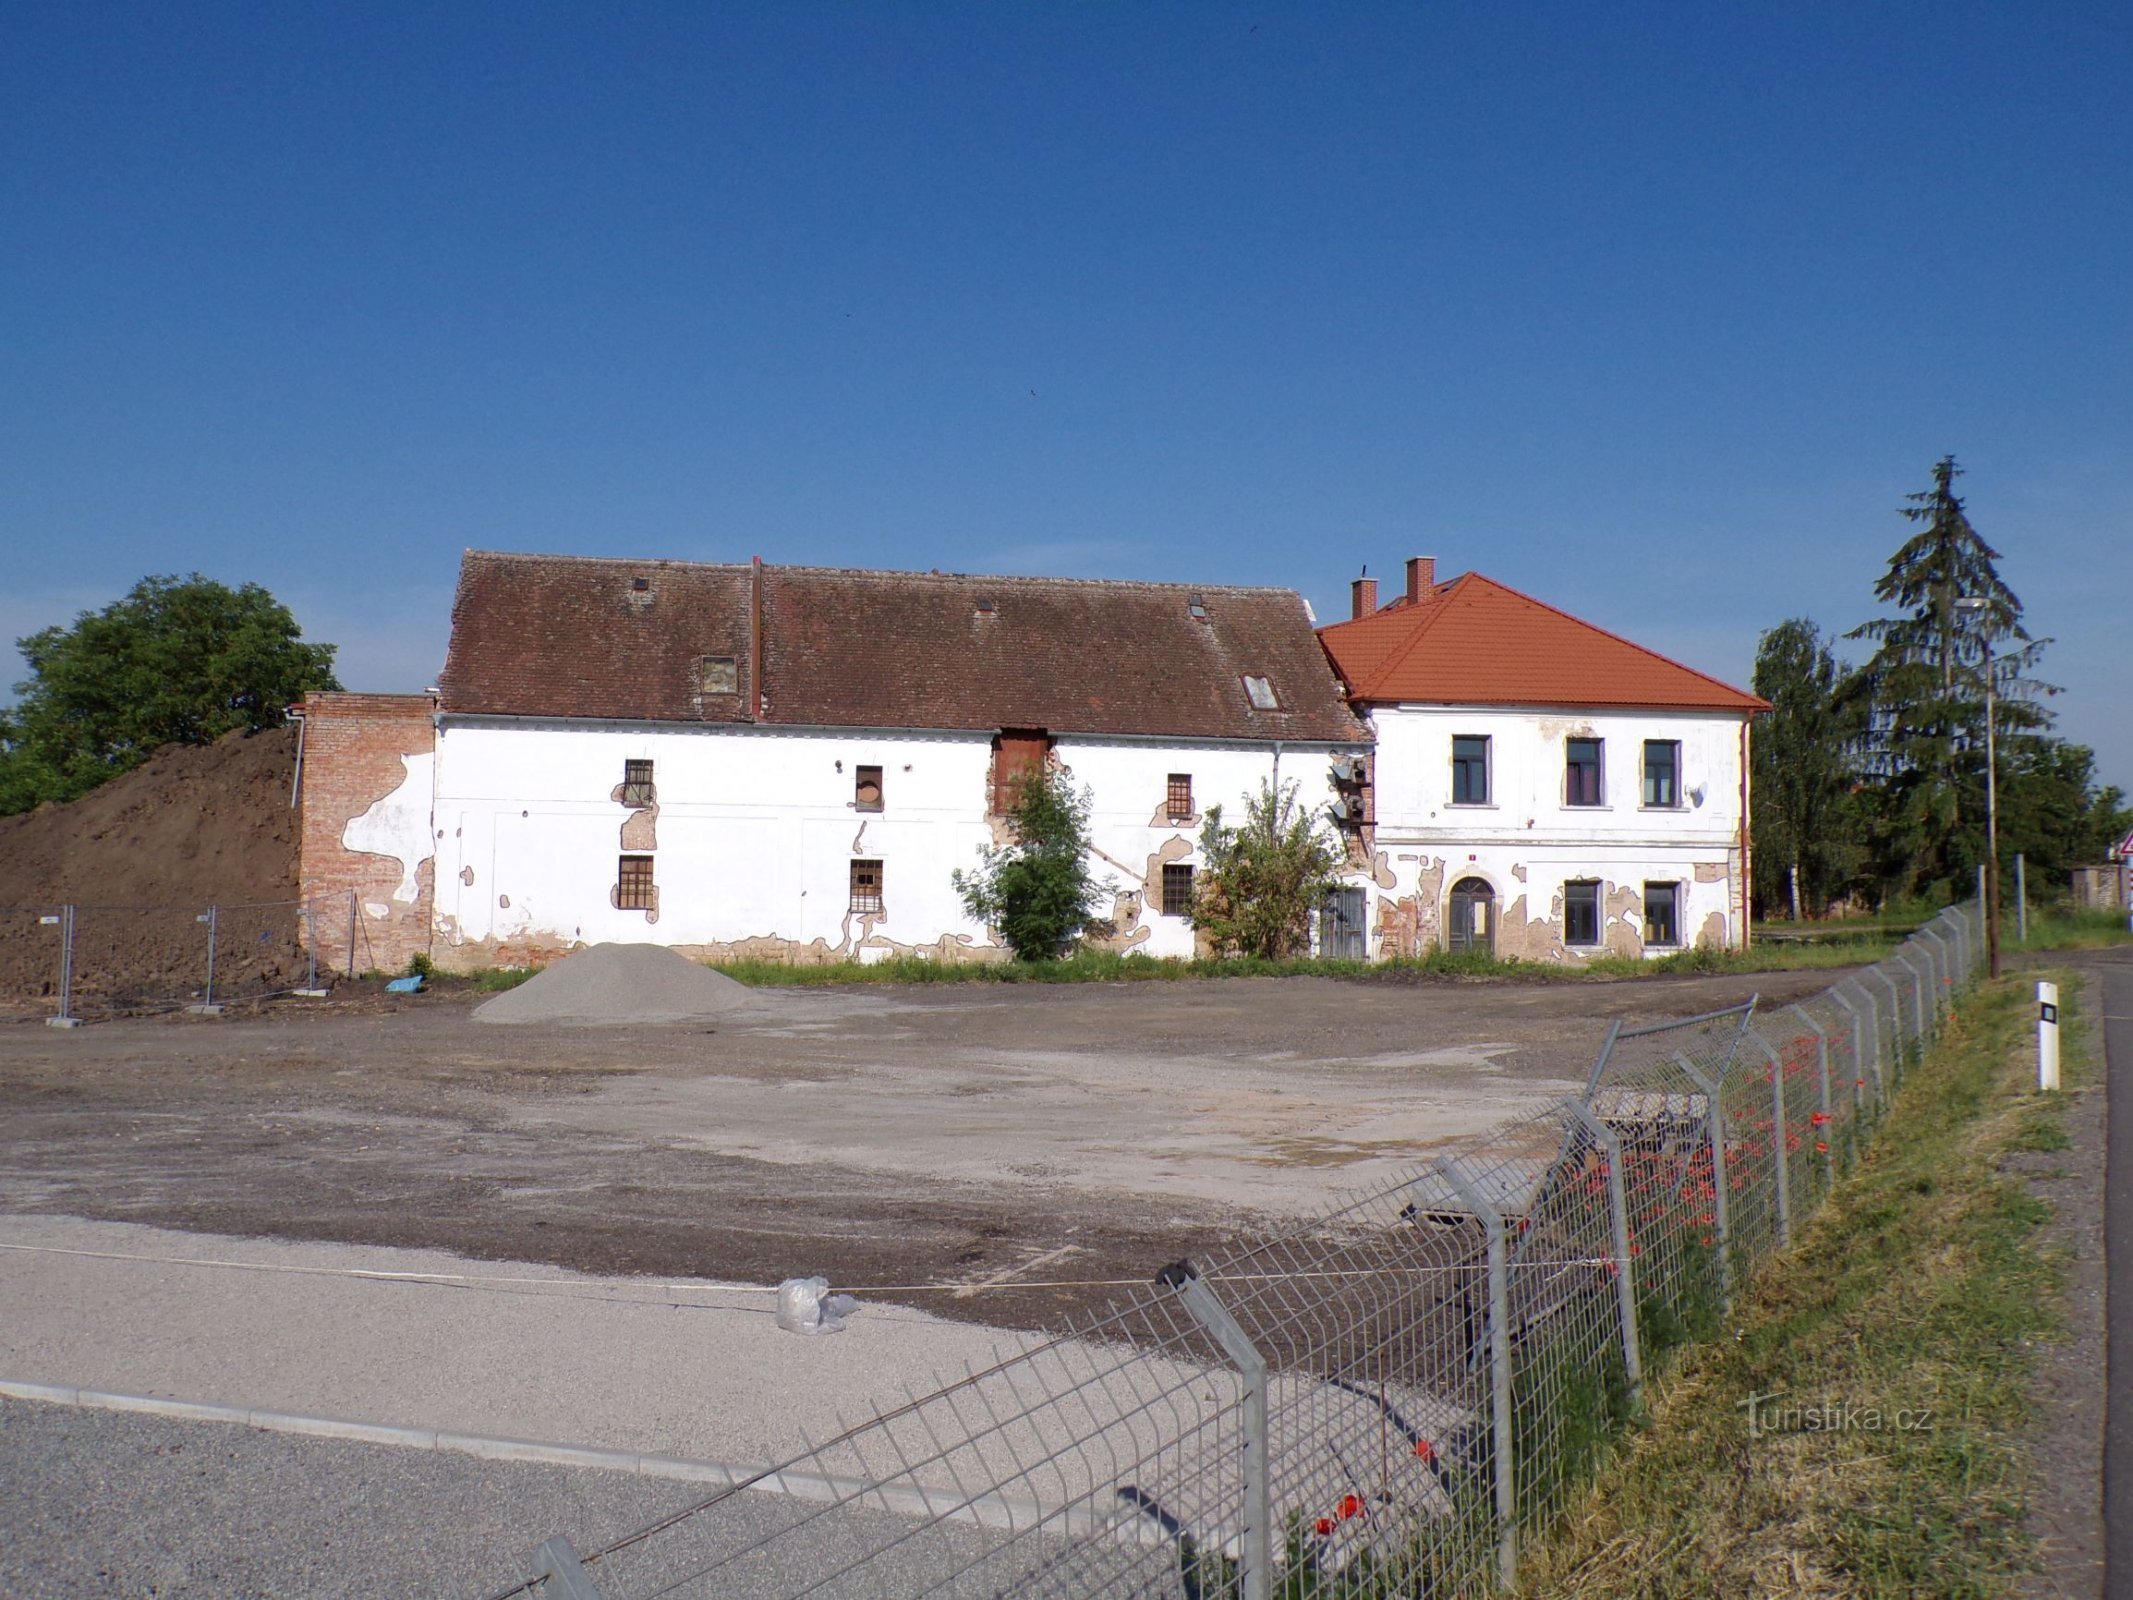 Nhà máy cũ (Sadová, 20.6.2021)